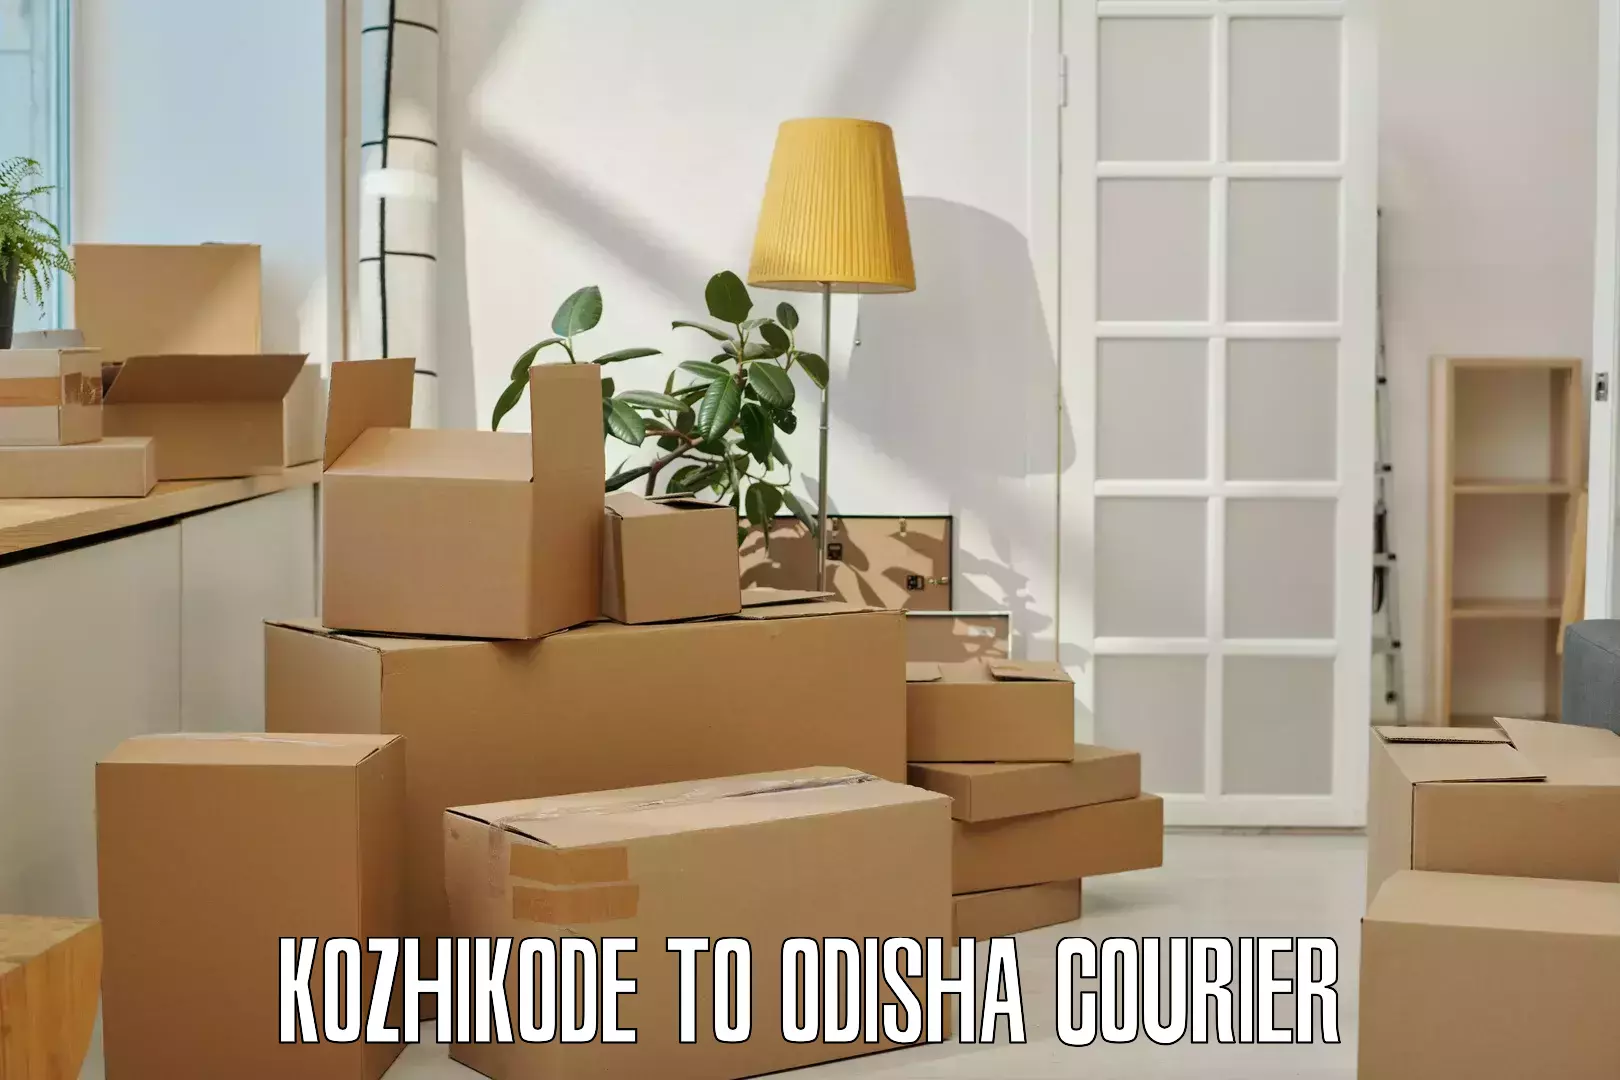 User-friendly courier app Kozhikode to Gunupur